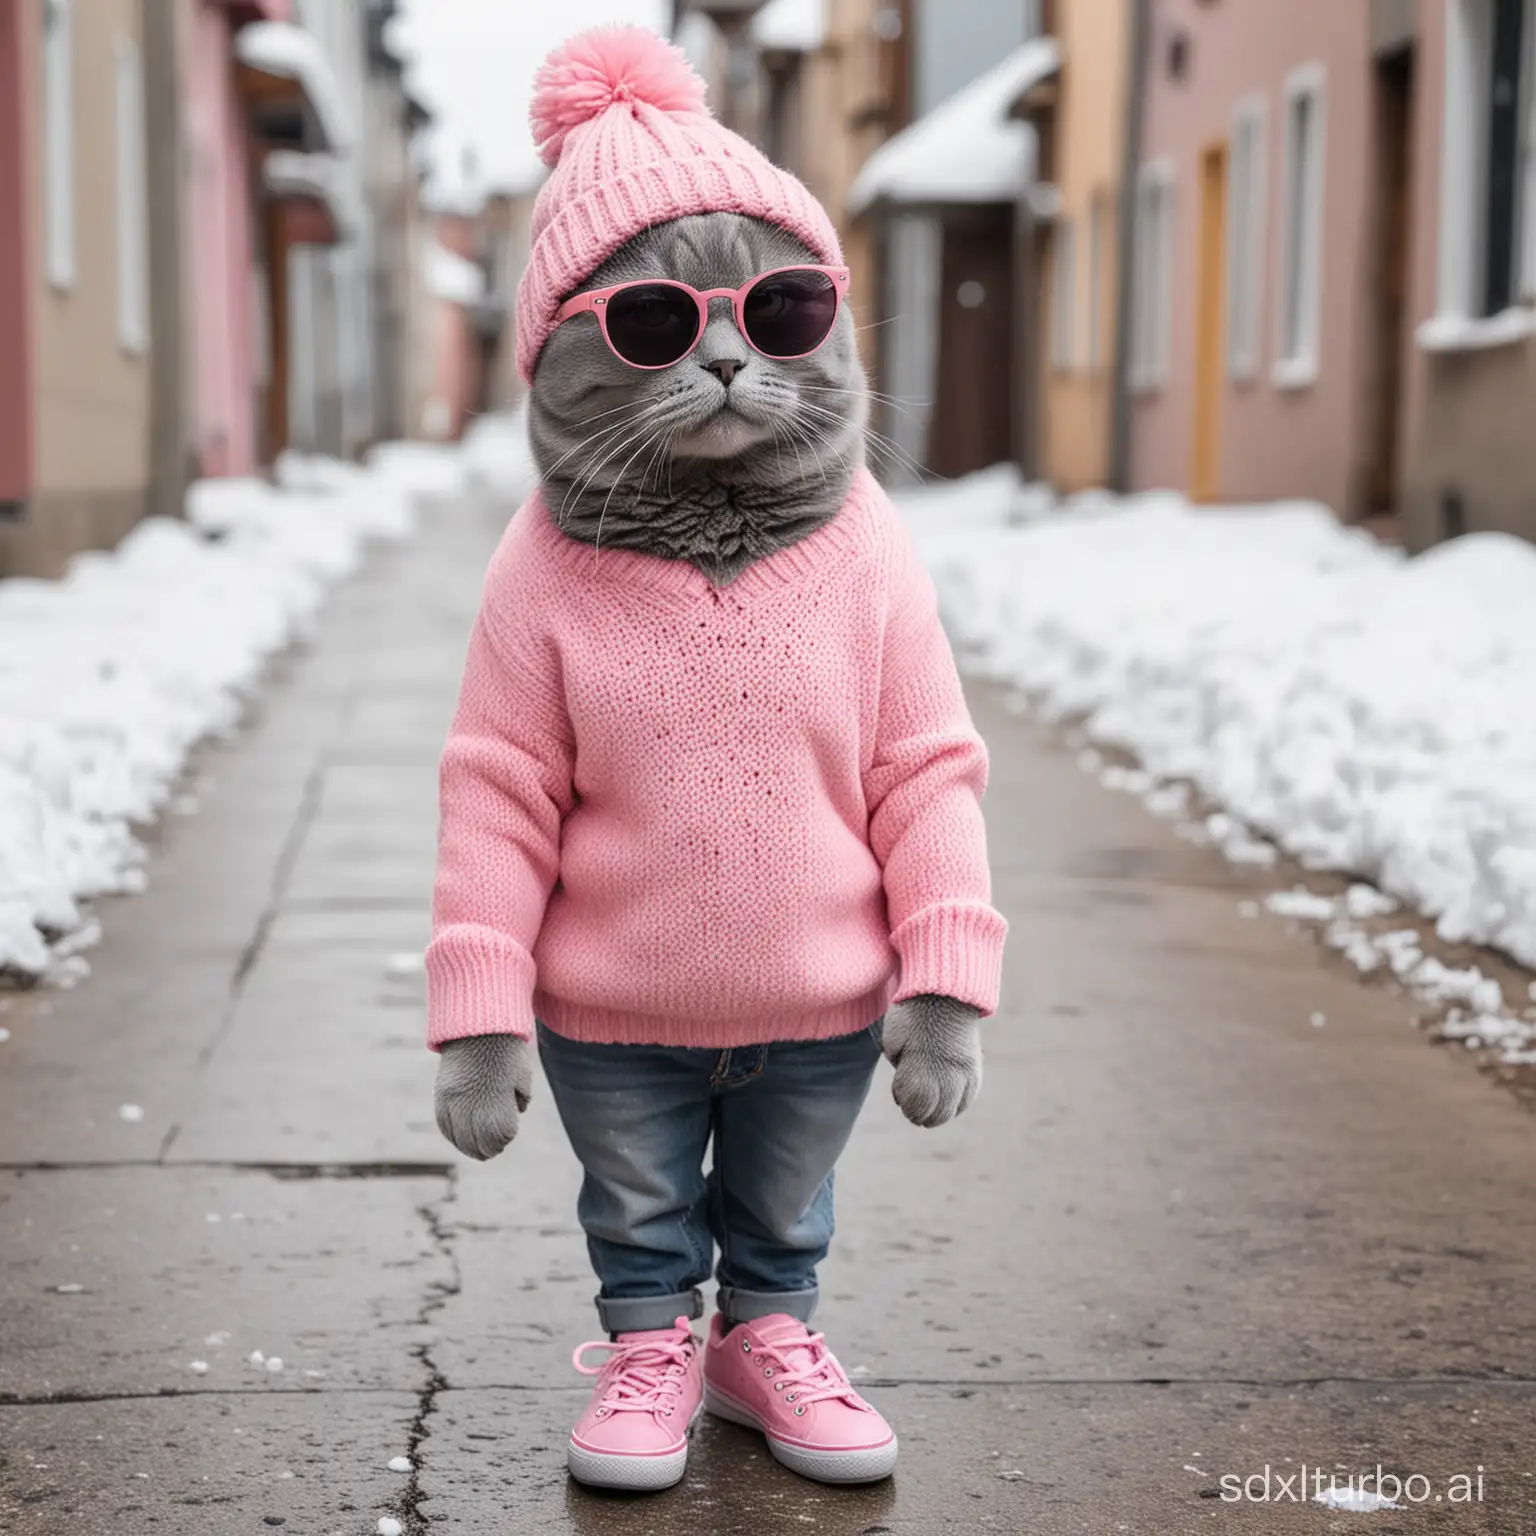 Grey-Cat-in-Pink-Sweater-Strolling-on-Snowy-Street